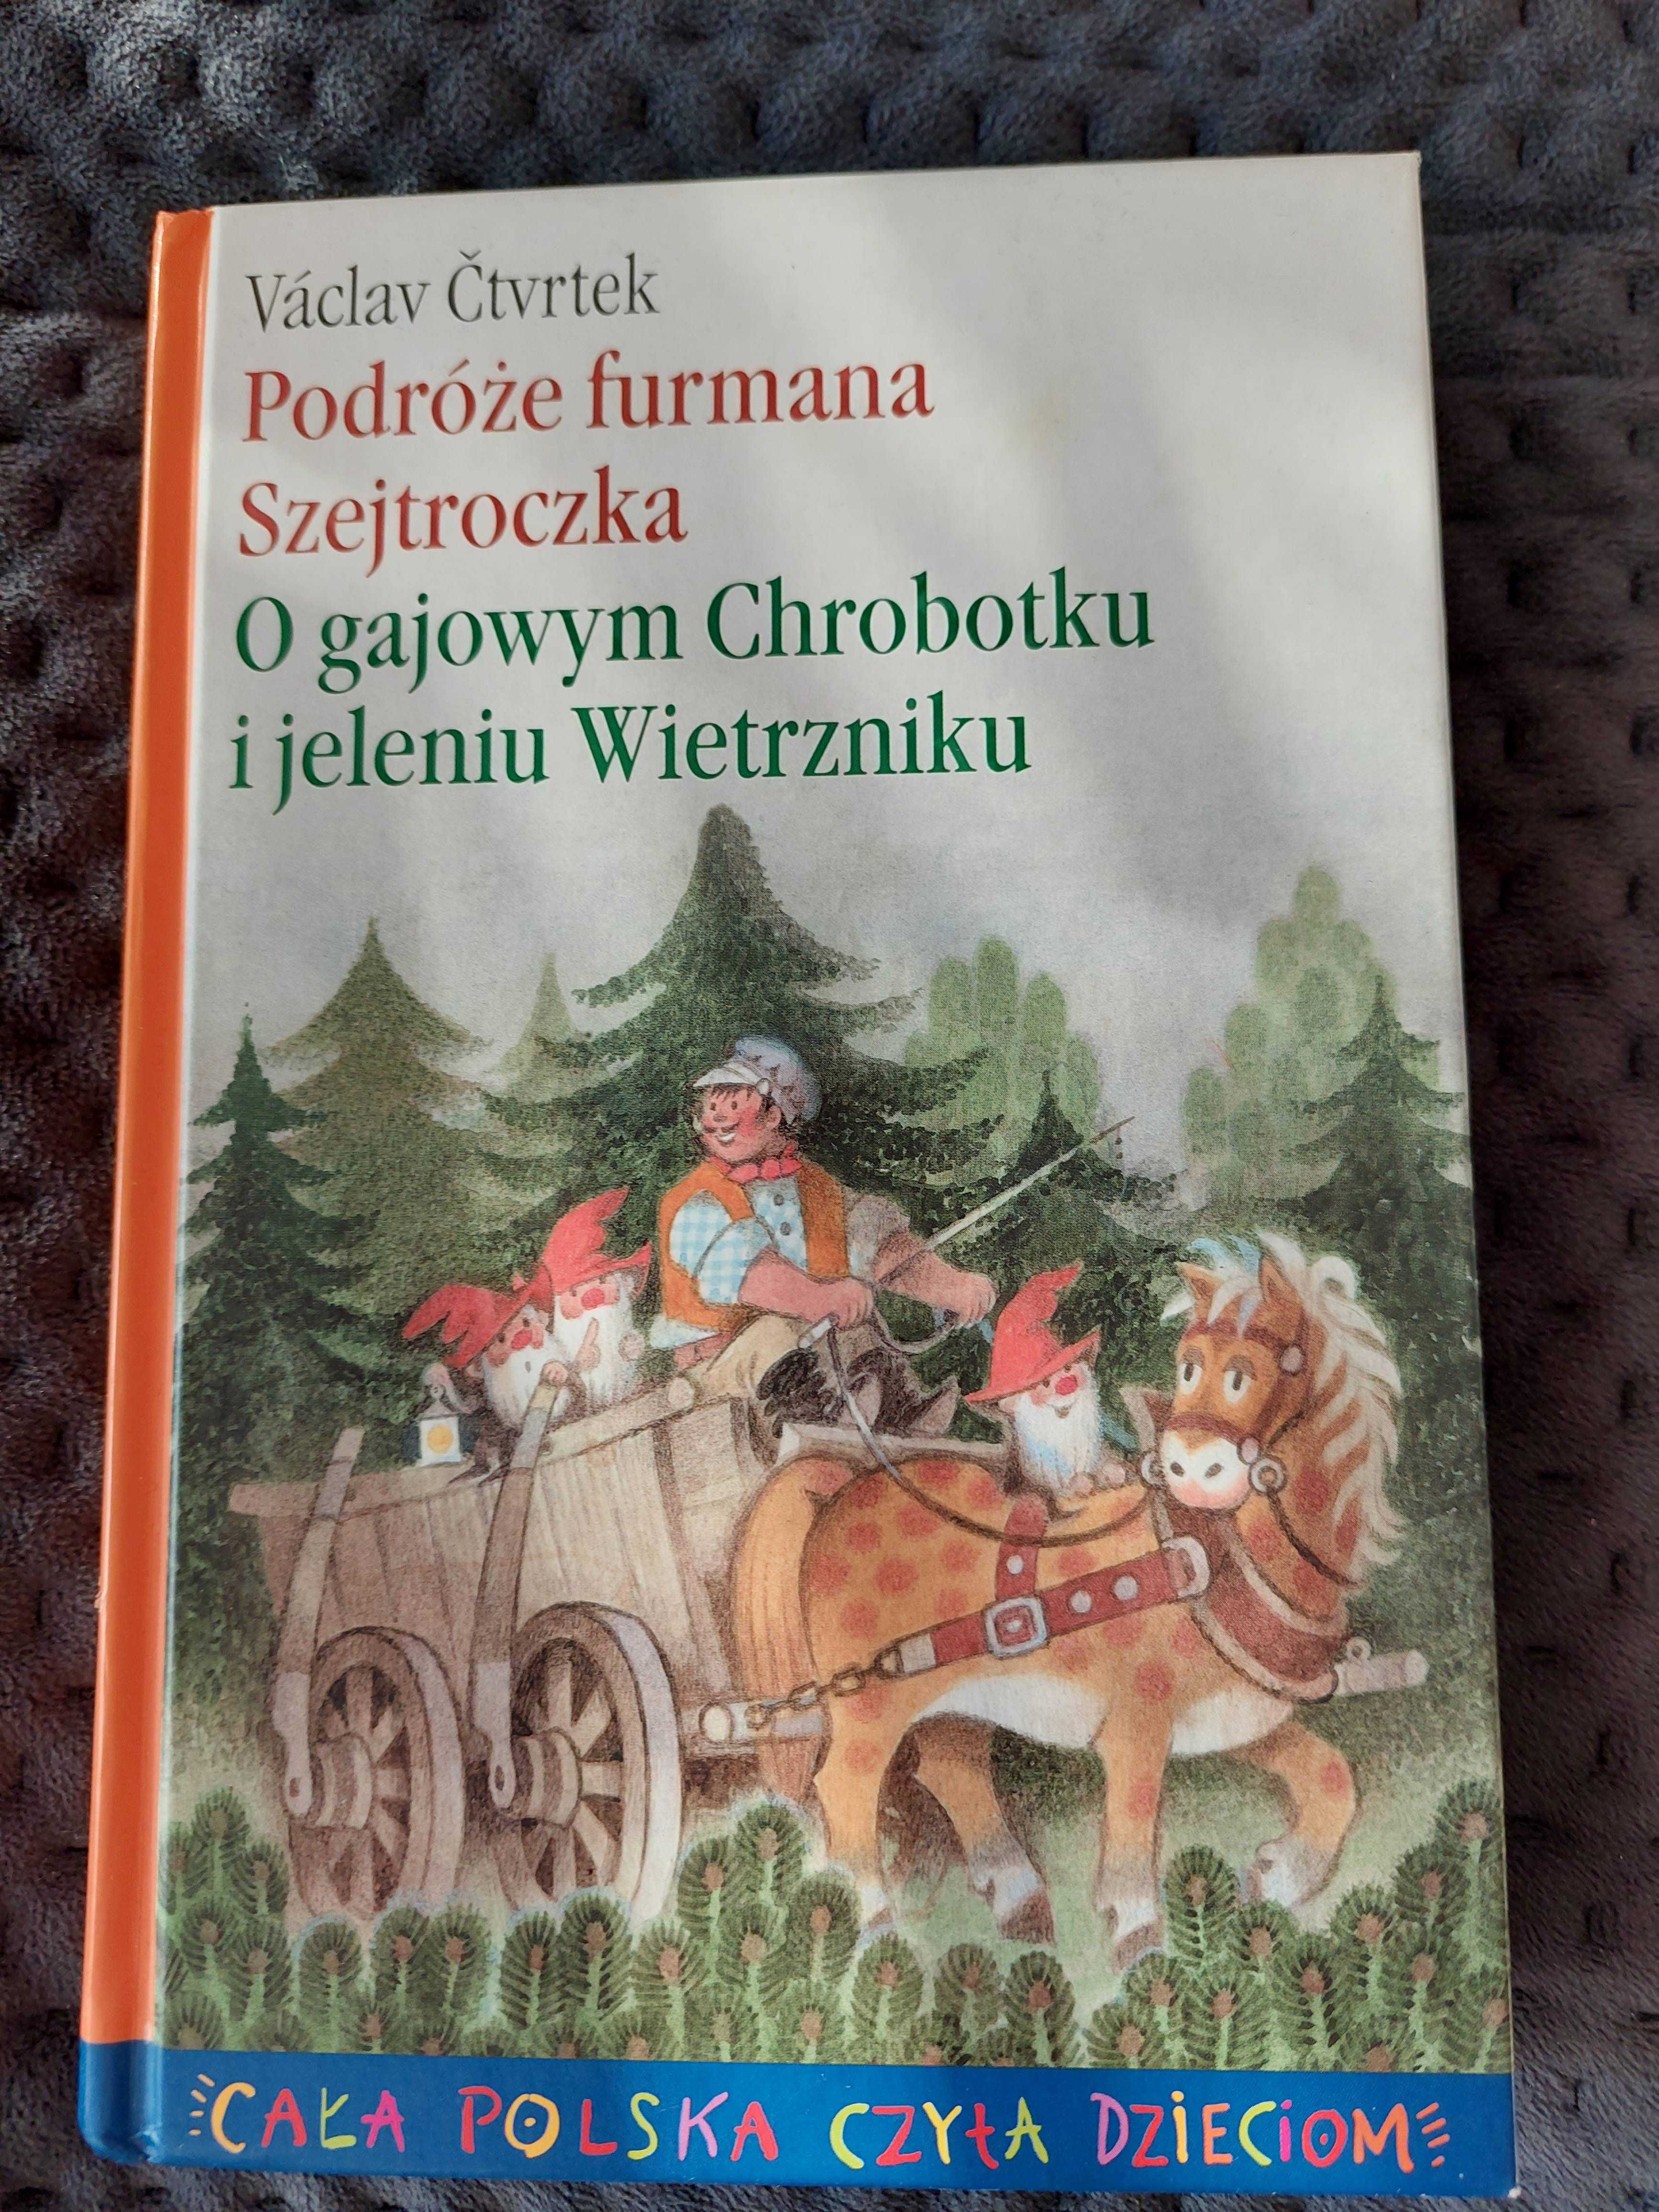 Książka "Podróże furmana Szejtroczka"